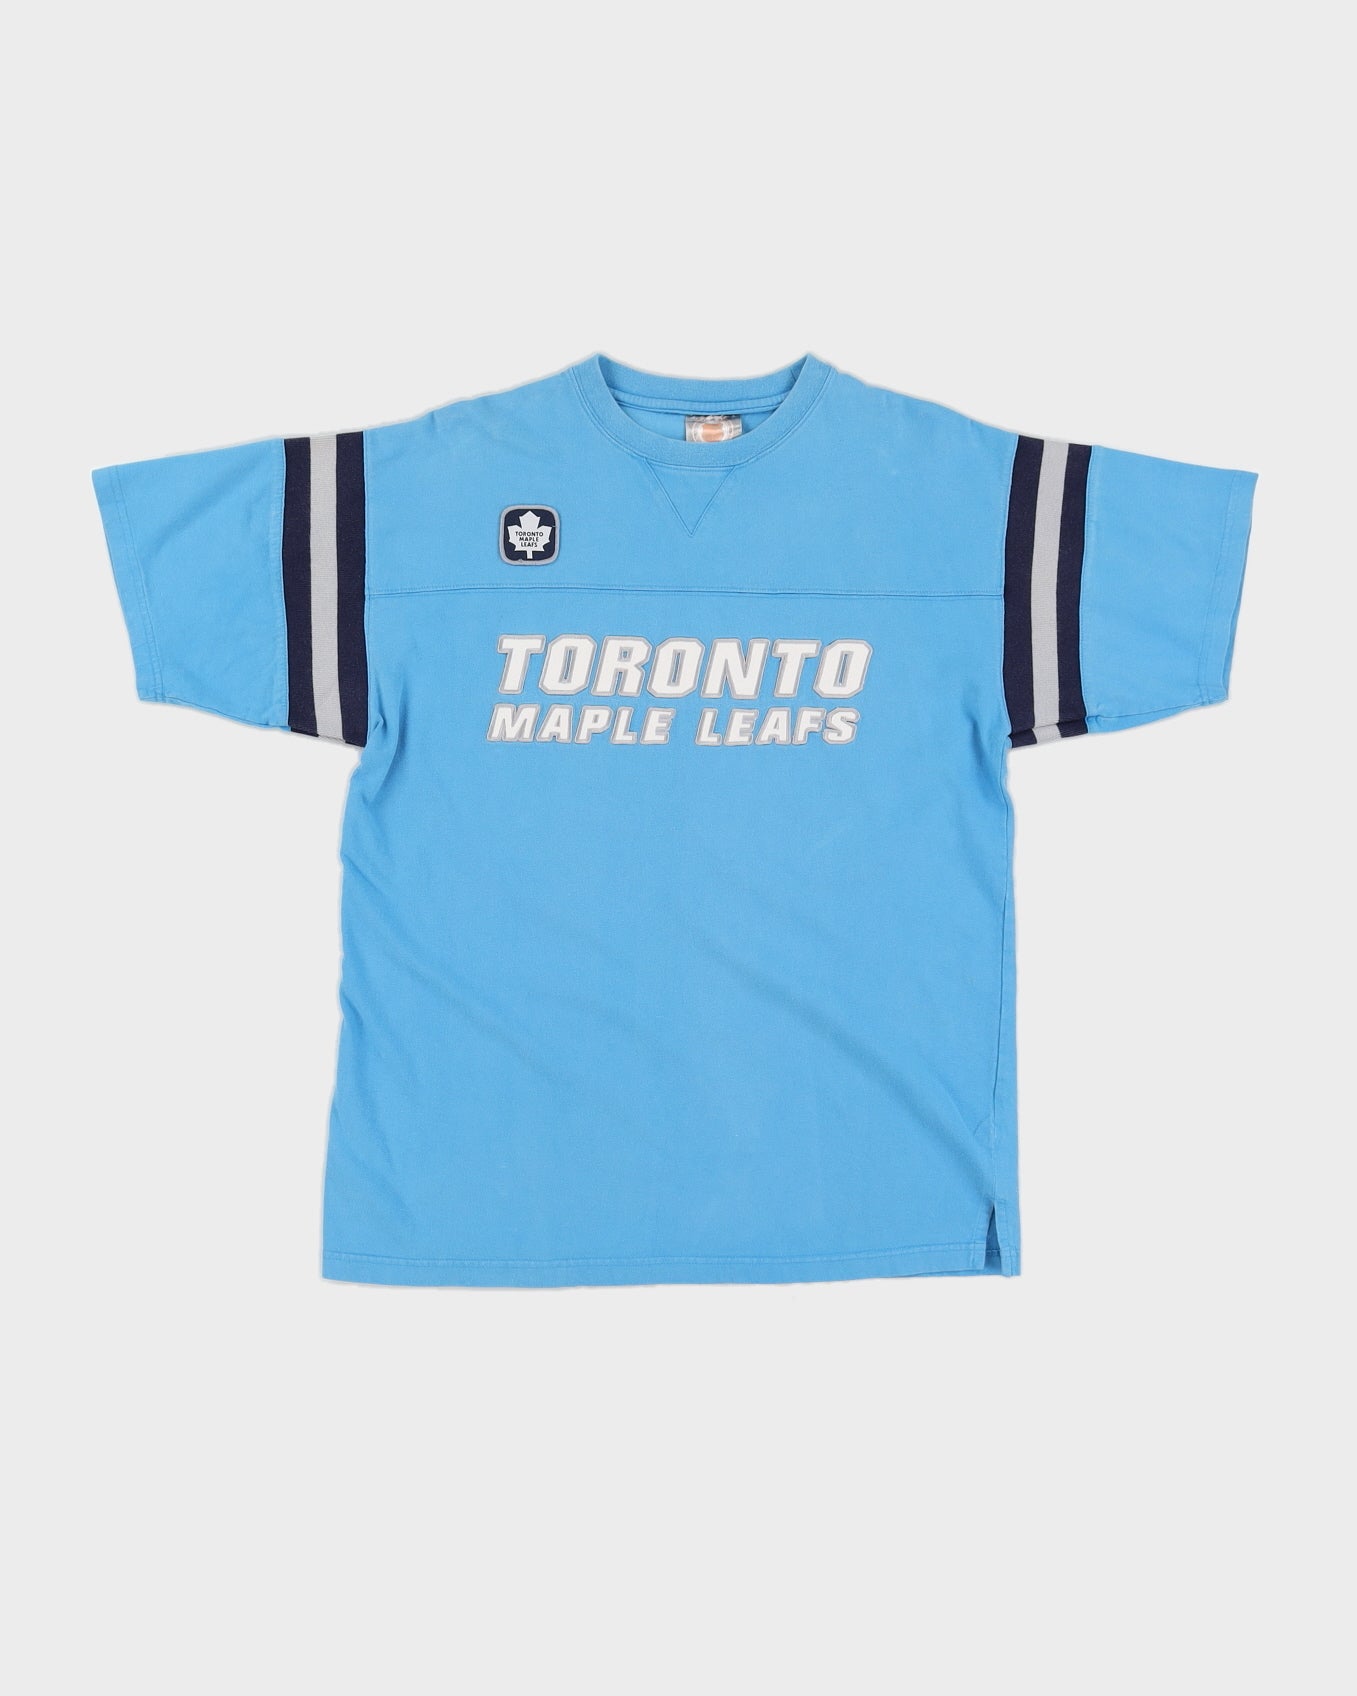 Vintage 90s NHL Toronto Maple Leafs T-Shirt - M/L